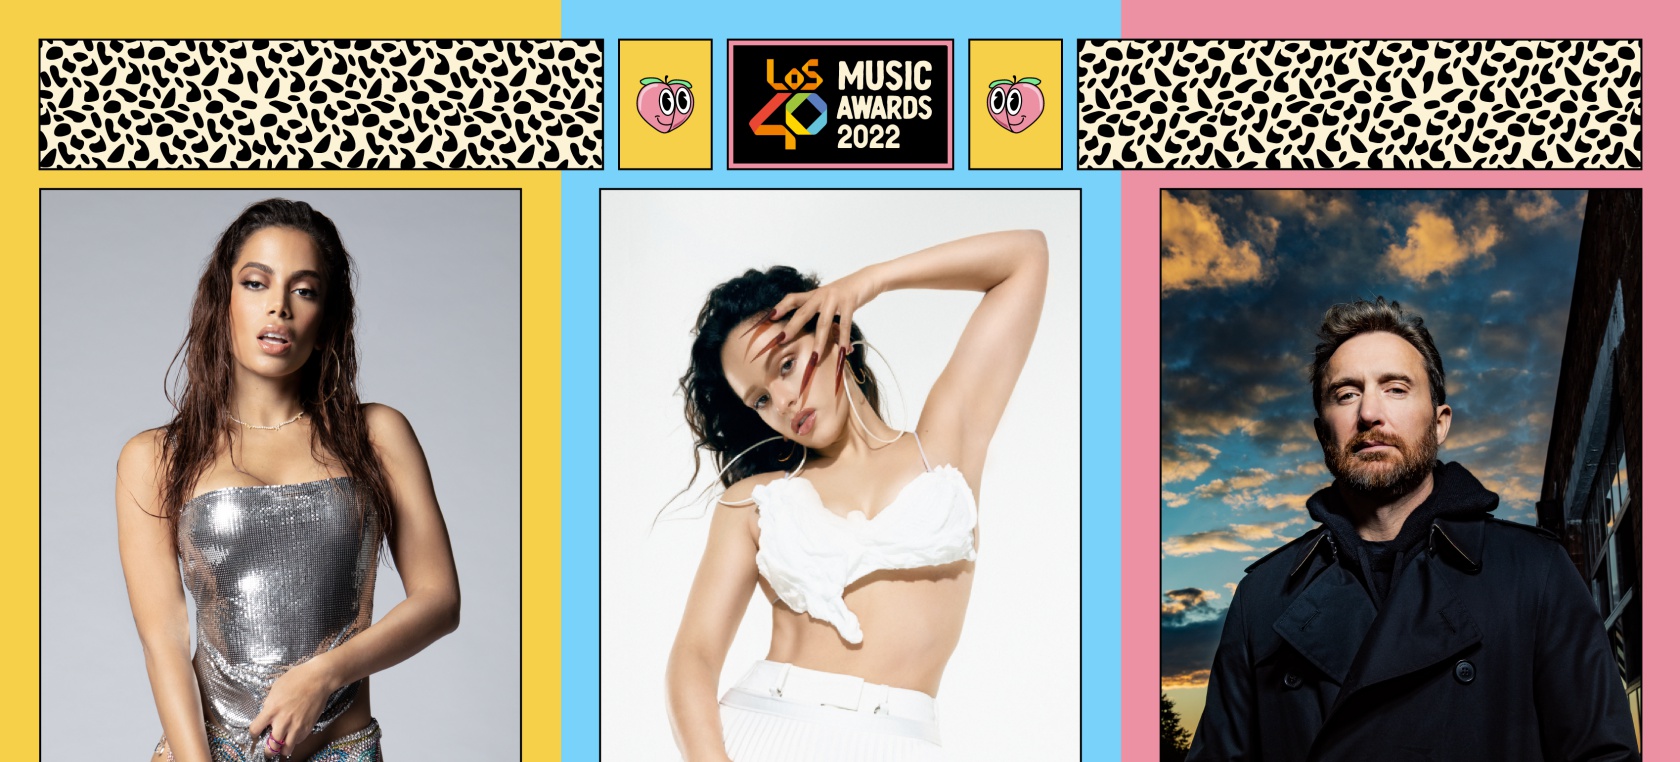 Conoce el cartel de LOS40 Music Awards 2022: todos los artistas y actuaciones confirmadas